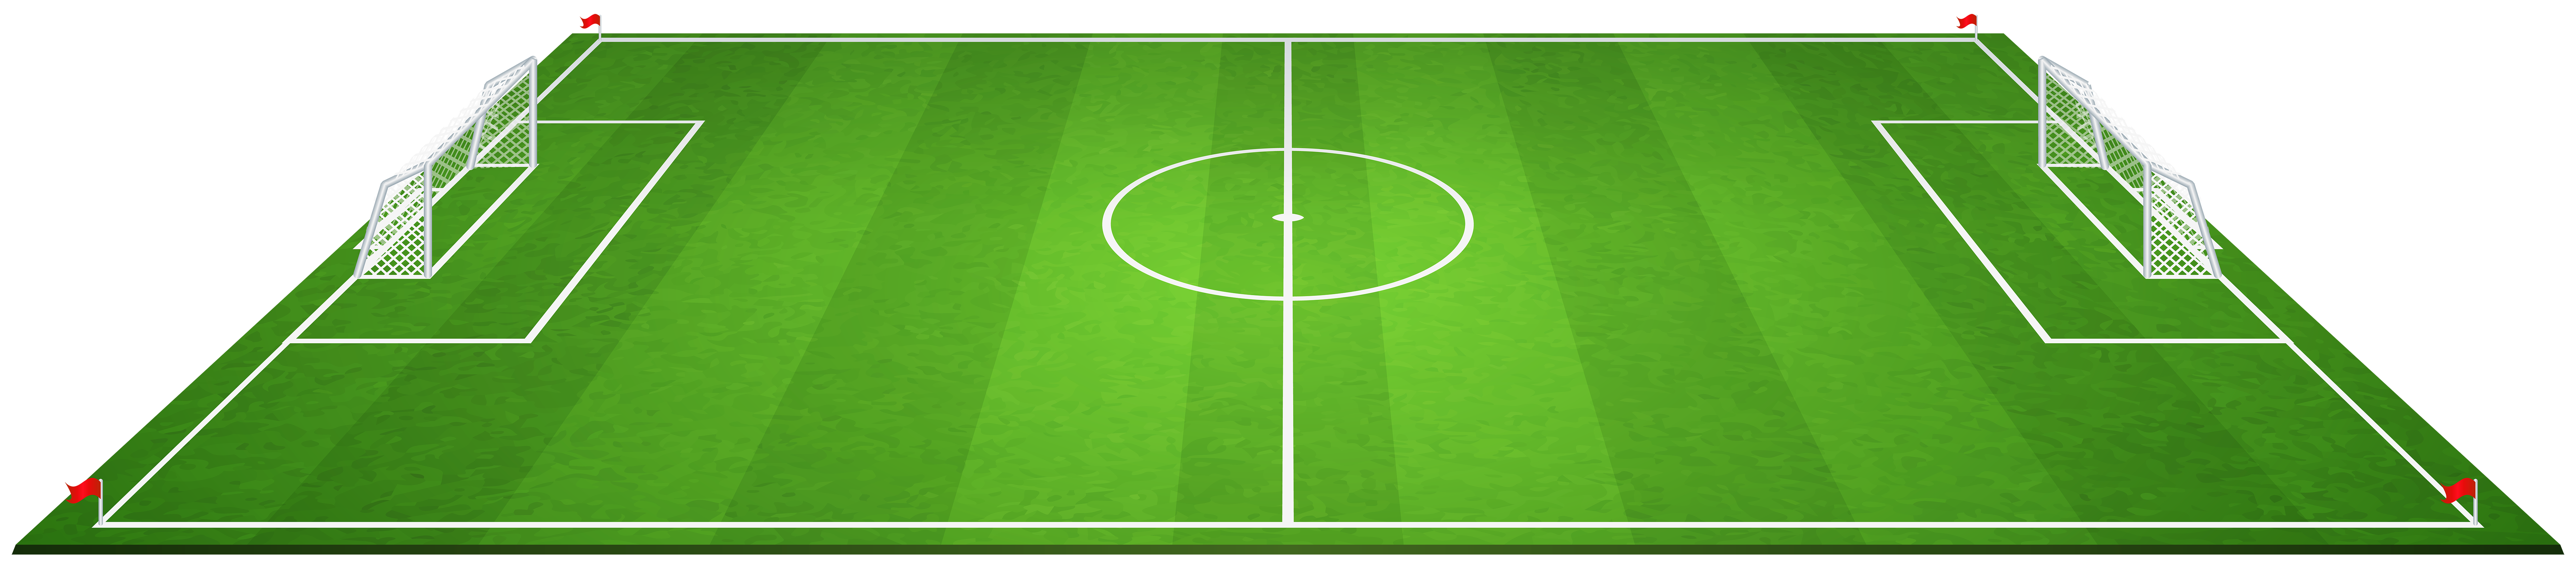 field clipart soccer court